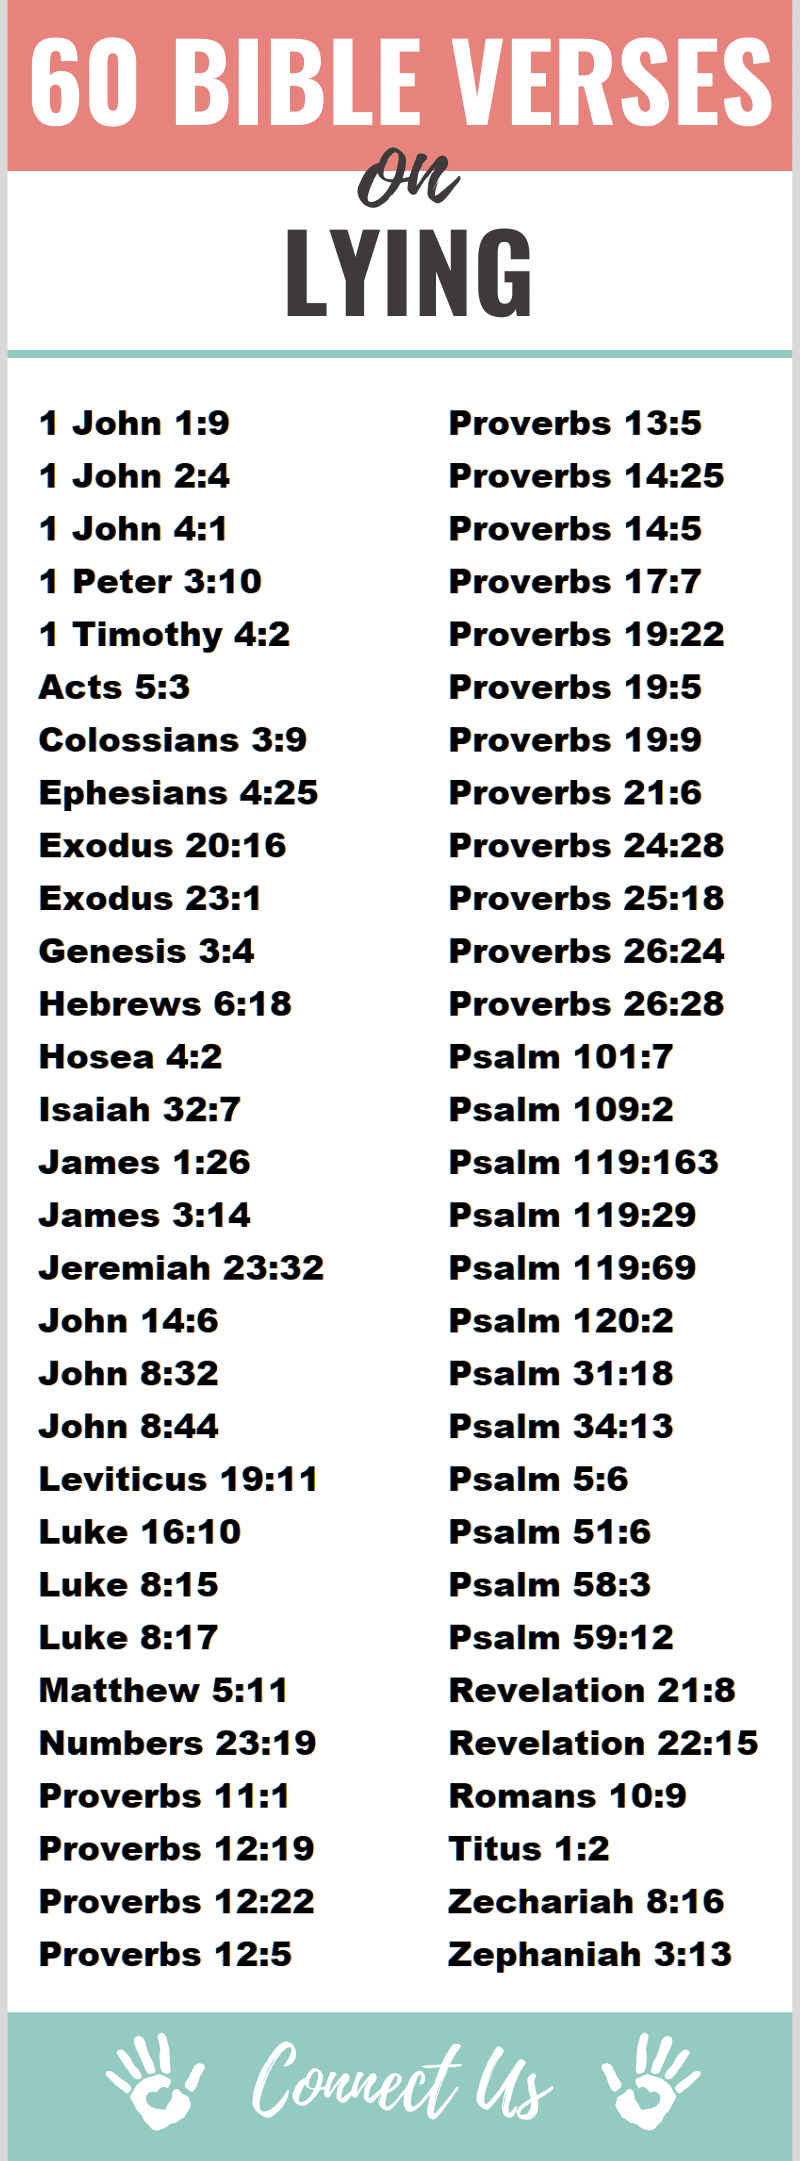 Bible Verses on Lying